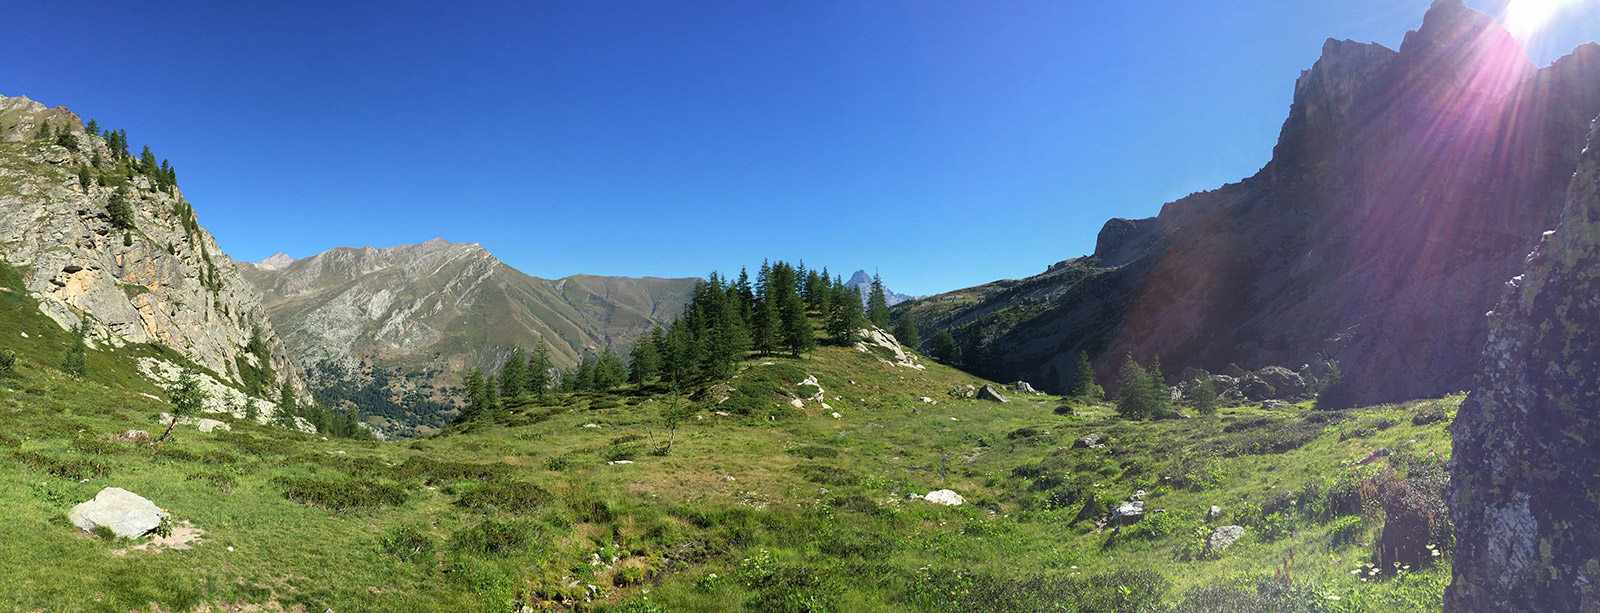 Paesaggio della valle Maira, sul sentiero per il Pelvo d'Elva